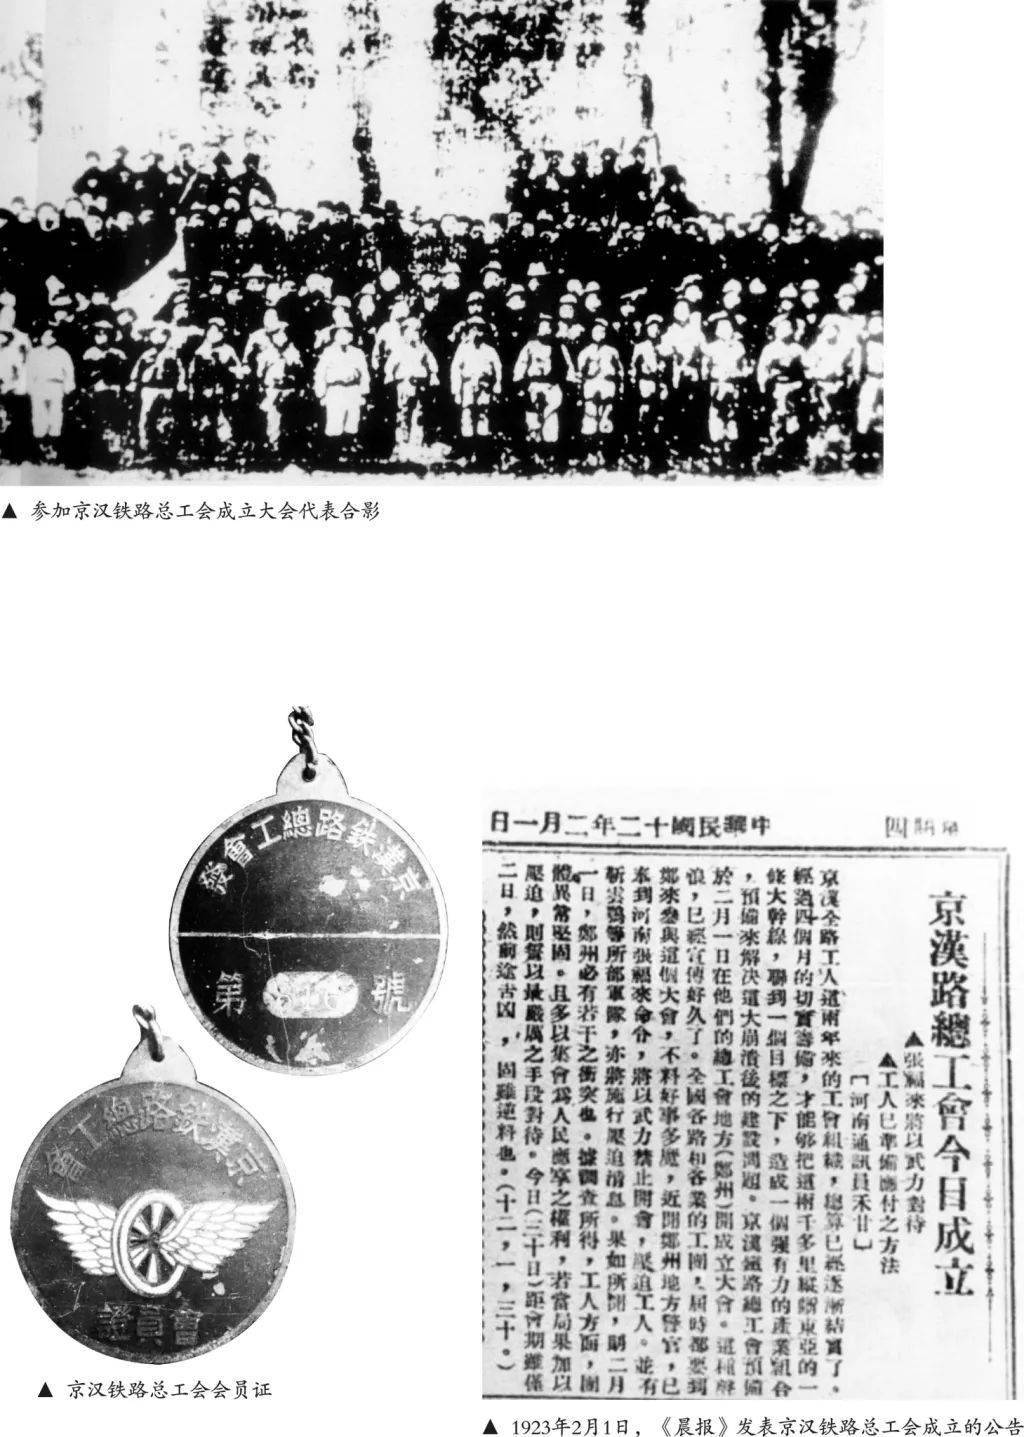 【工会课堂】红色历史:京汉铁路总工会成立